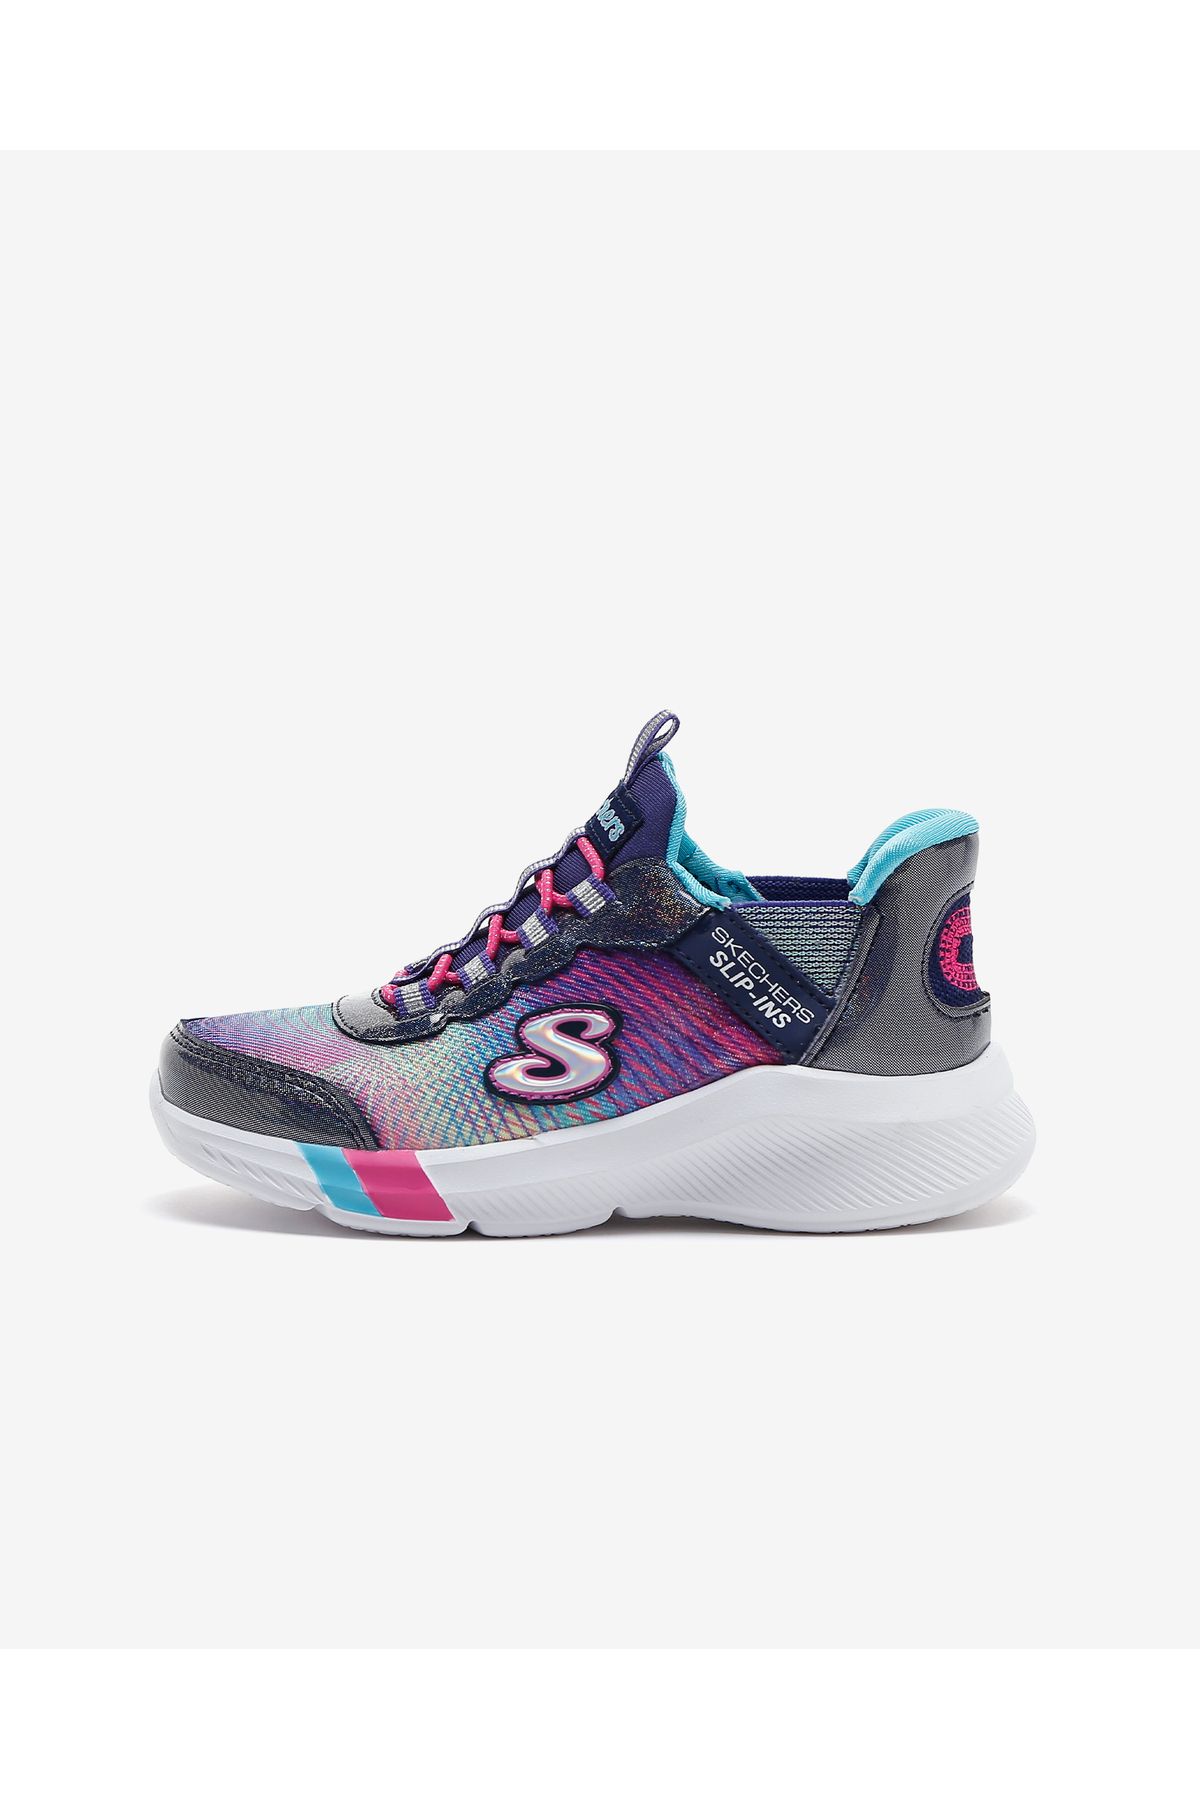 Skechers Dreamy Lites - Colorful Prism - Slip-ins Büyük Kız Çocuk Lacivert Spor Ayakkabı 303514l Nvmt